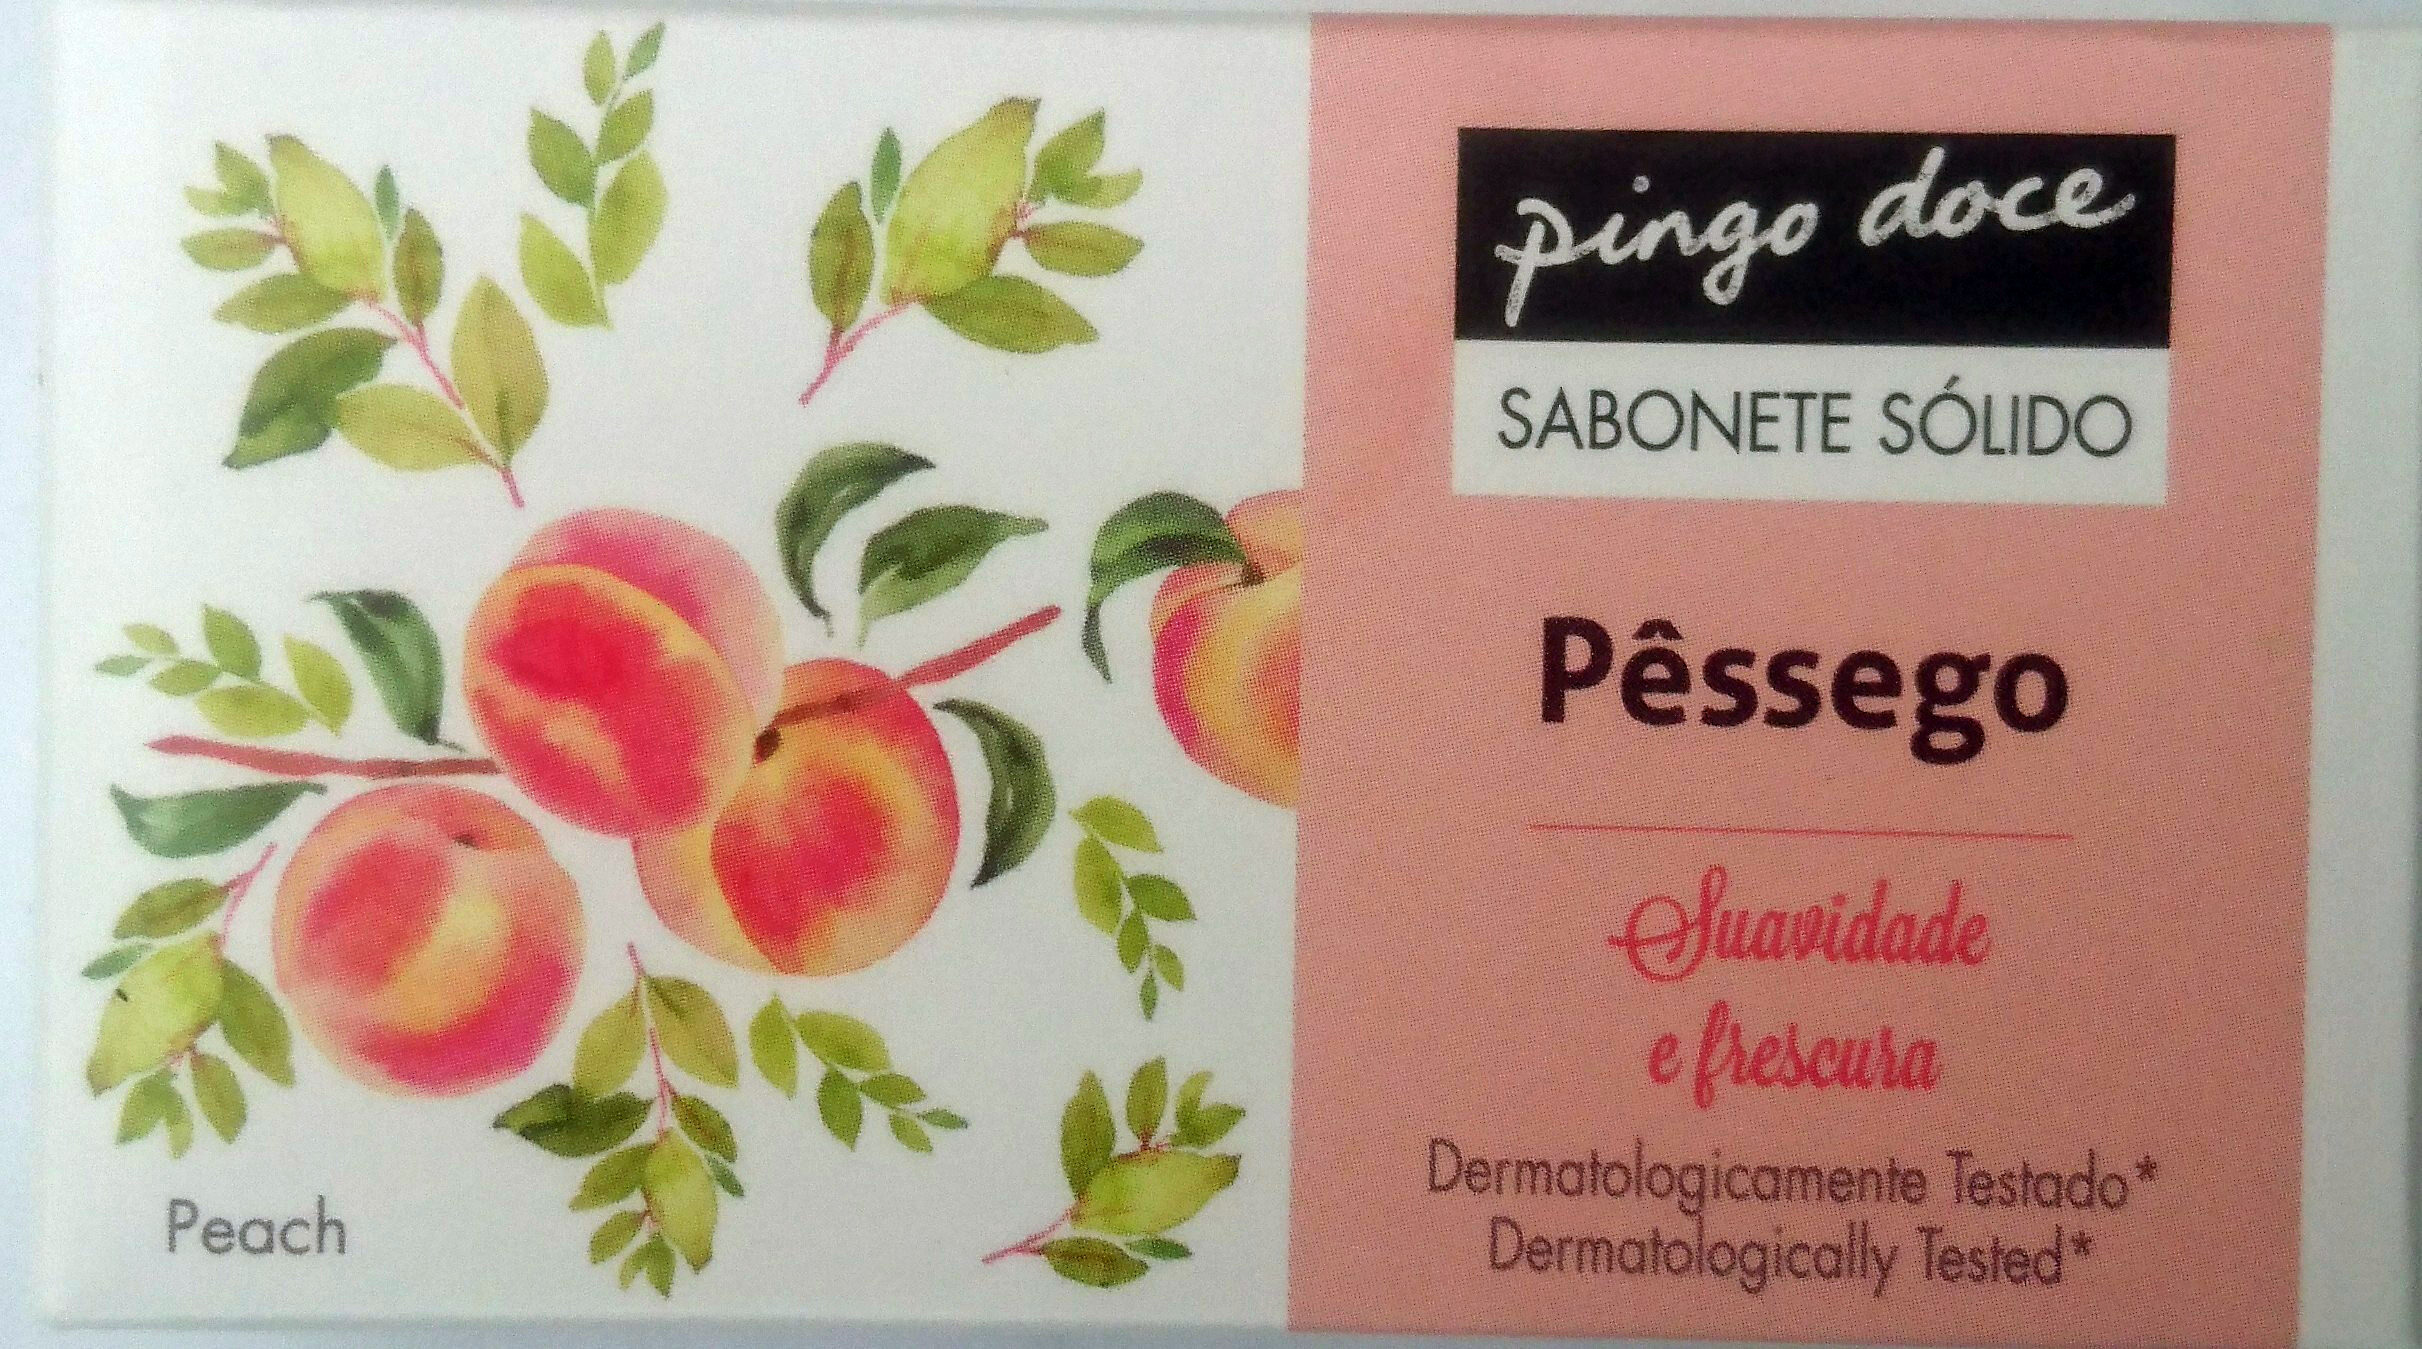 Sabonete sólido pêssego - Produto - pt